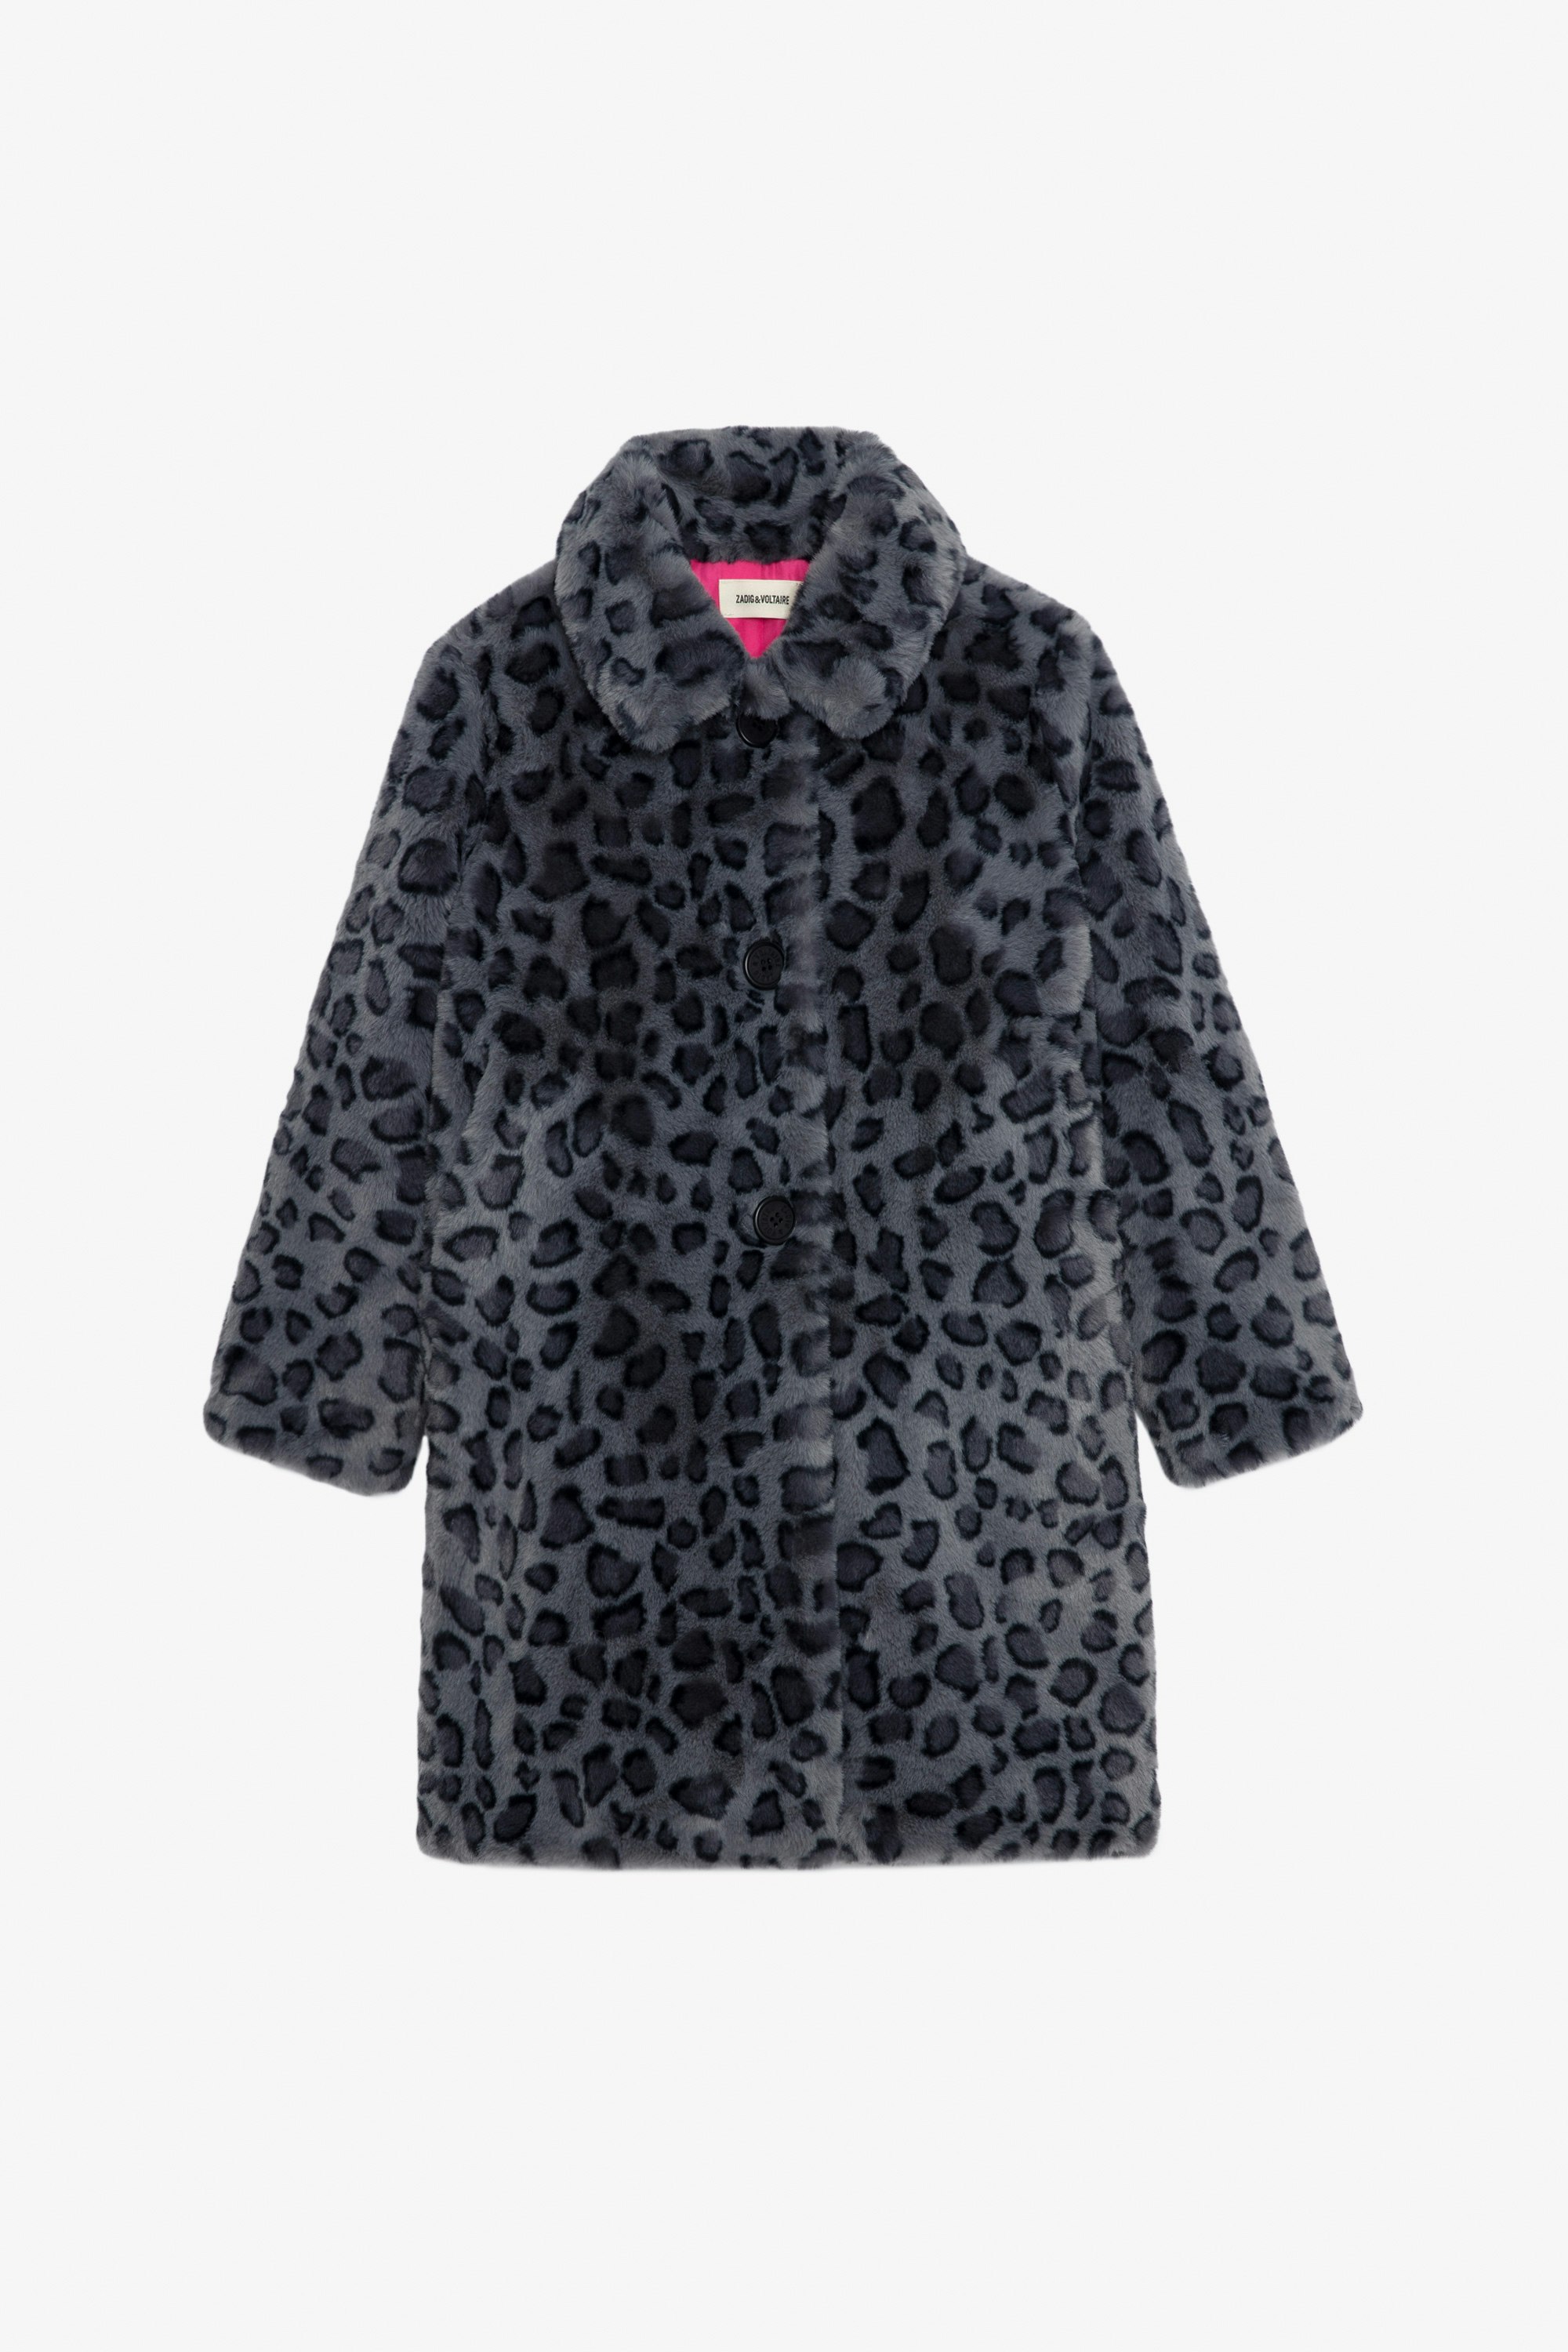 Mantel Madeleine für Mädchen - Schwarzer Fleece-Mantel mit Leoparden-Print und Futter in Kontrastfarbe für Mädchen.